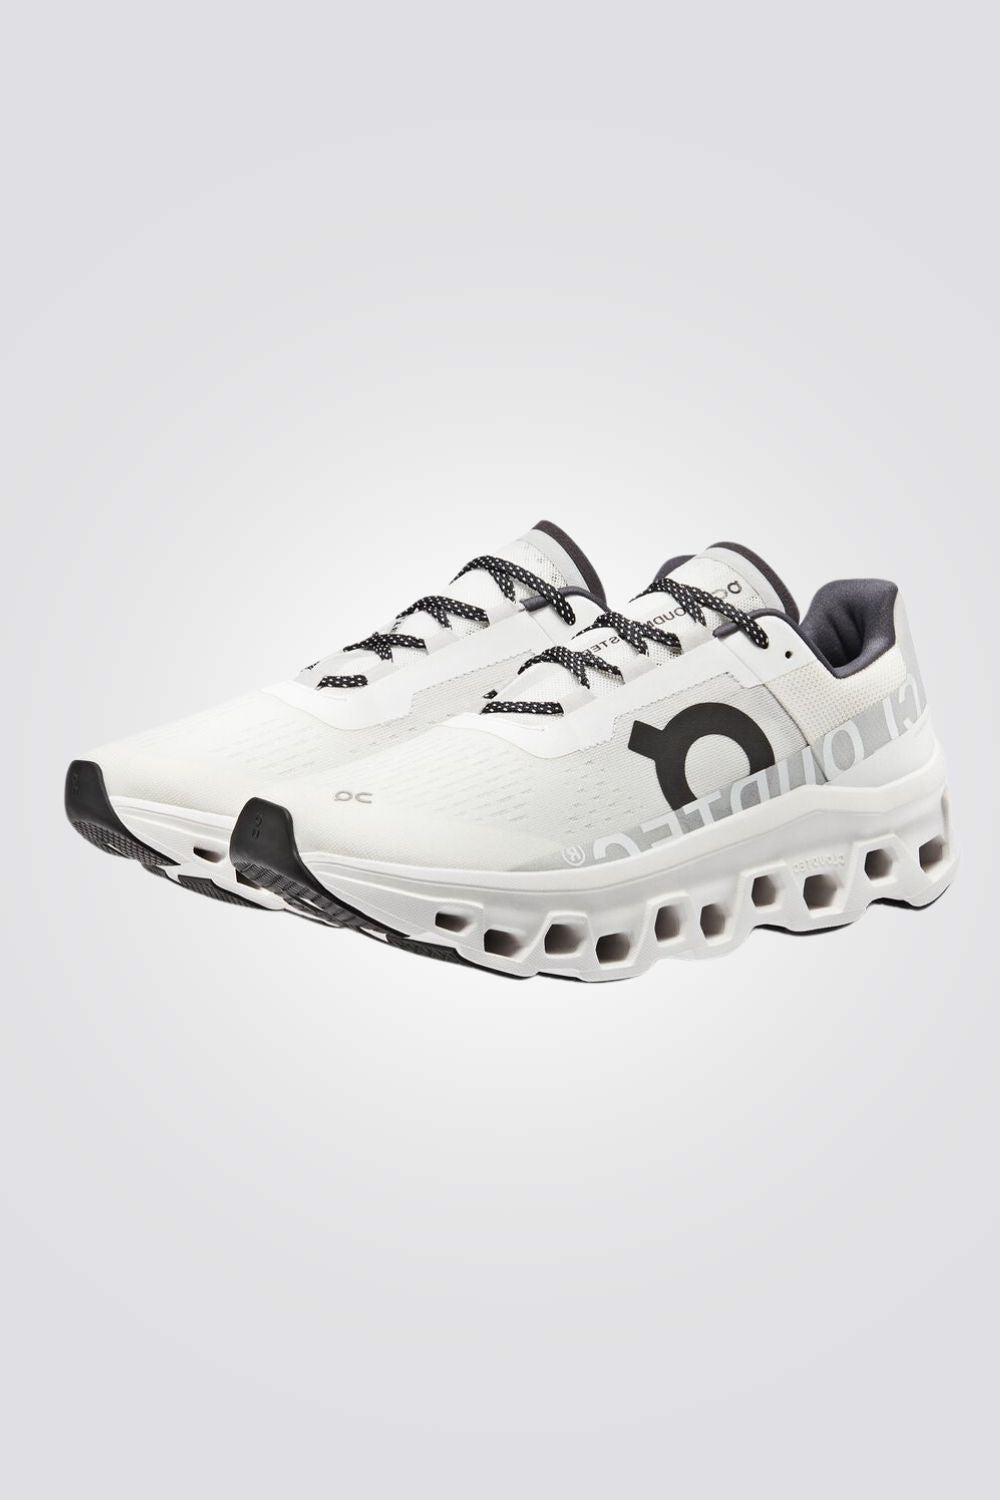 נעלי ספורט לגברים Cloudmonster Undyed בצבע לבן ושחור